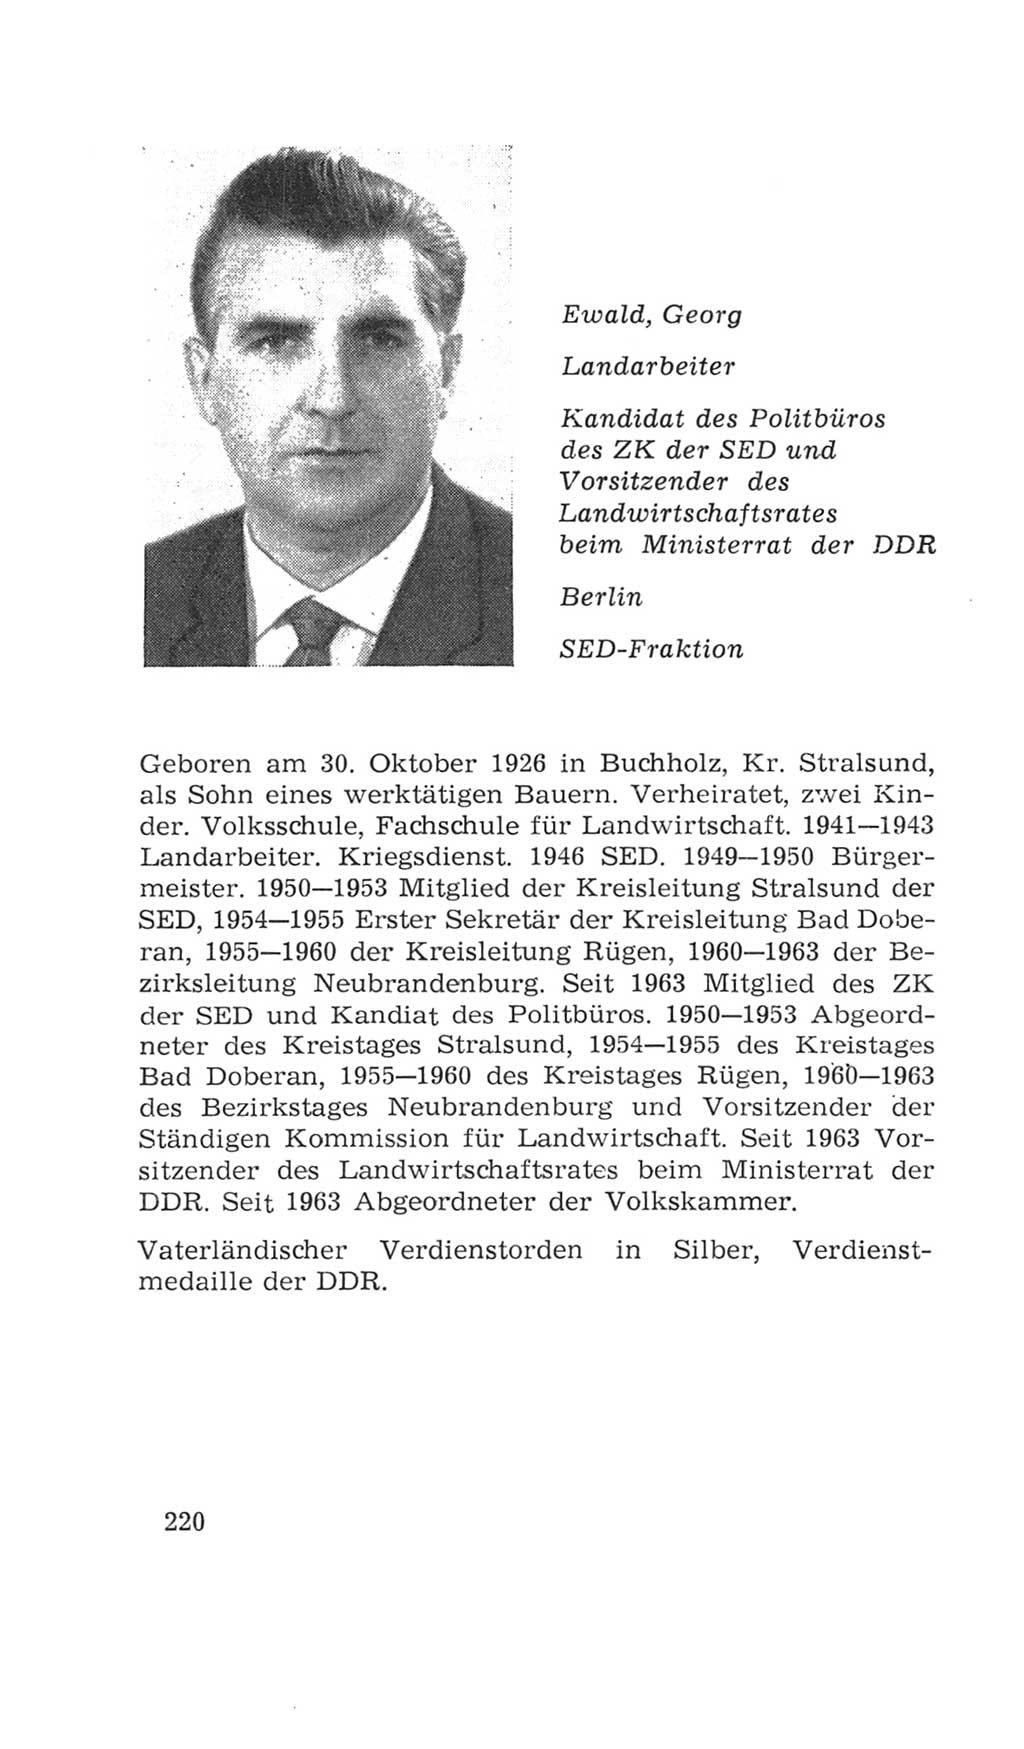 Volkskammer (VK) der Deutschen Demokratischen Republik (DDR), 4. Wahlperiode 1963-1967, Seite 220 (VK. DDR 4. WP. 1963-1967, S. 220)